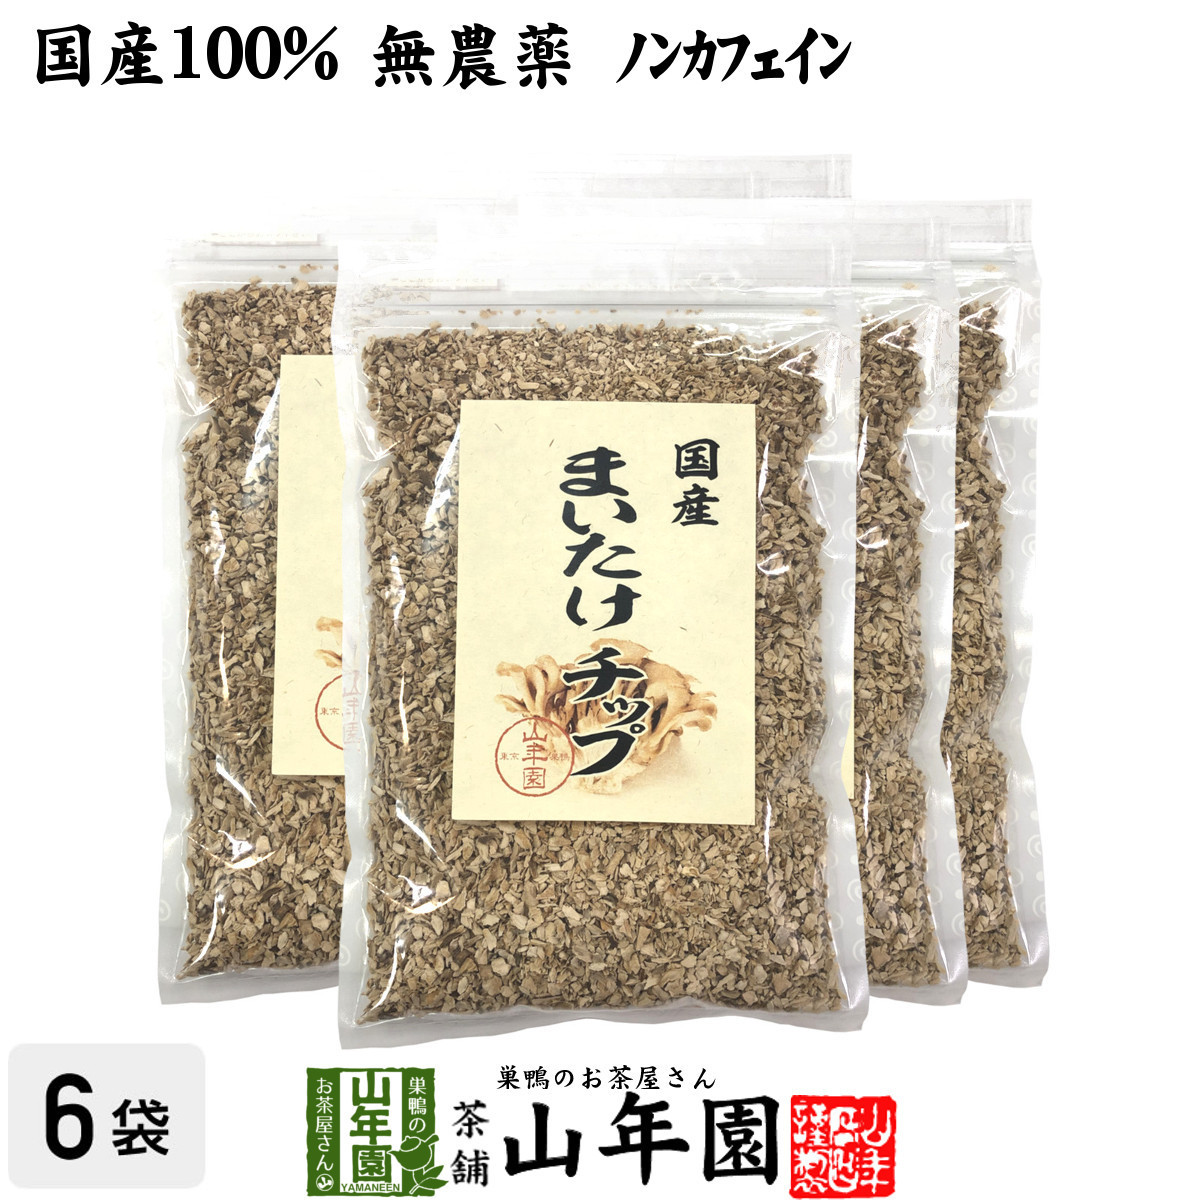 Здоровые продукты домашняя гриба Maitake Mushroom Chip 70g x 6 сумков набор бесплатно доставка